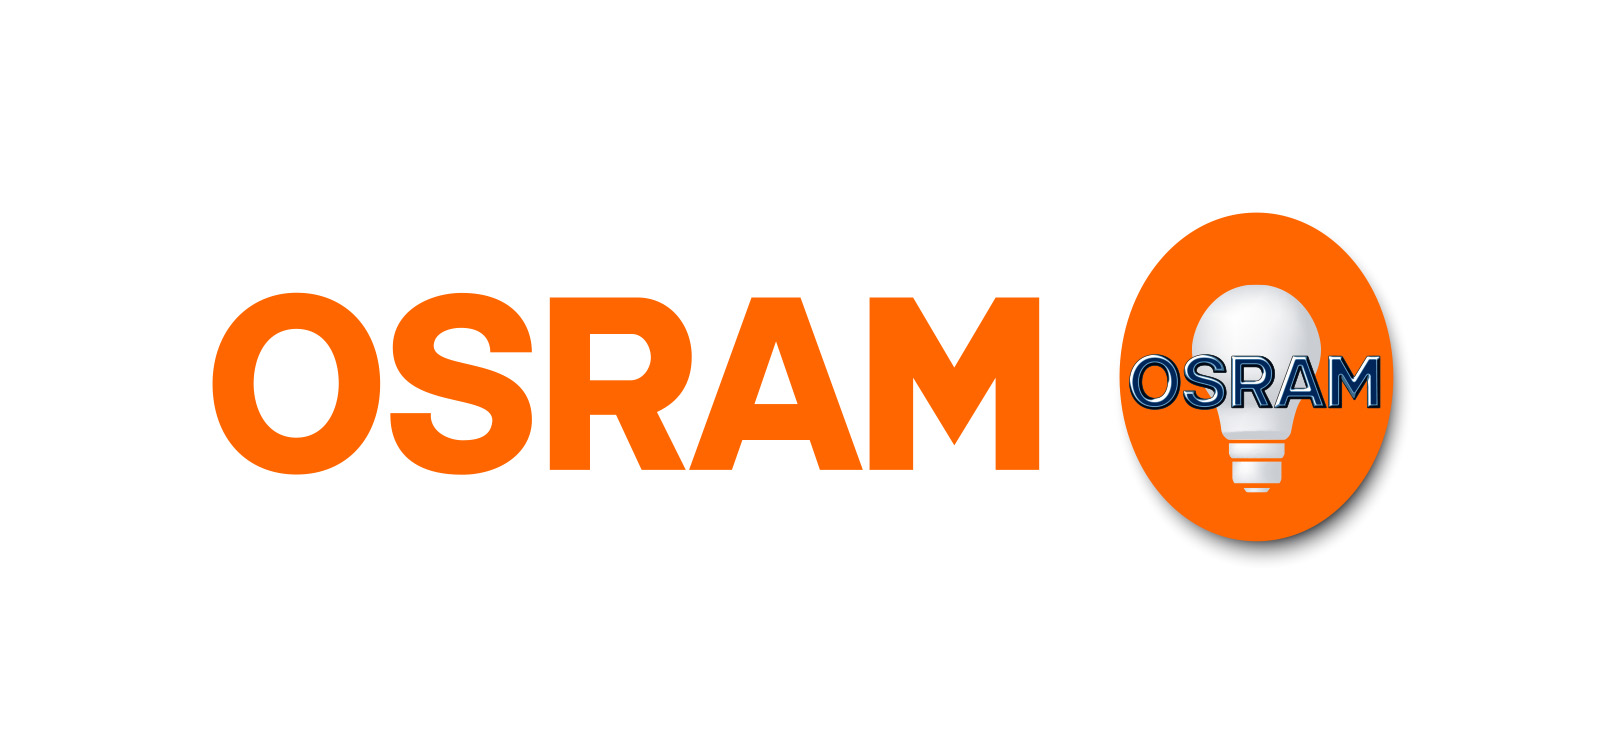 OSRAM Corporate Design 2006